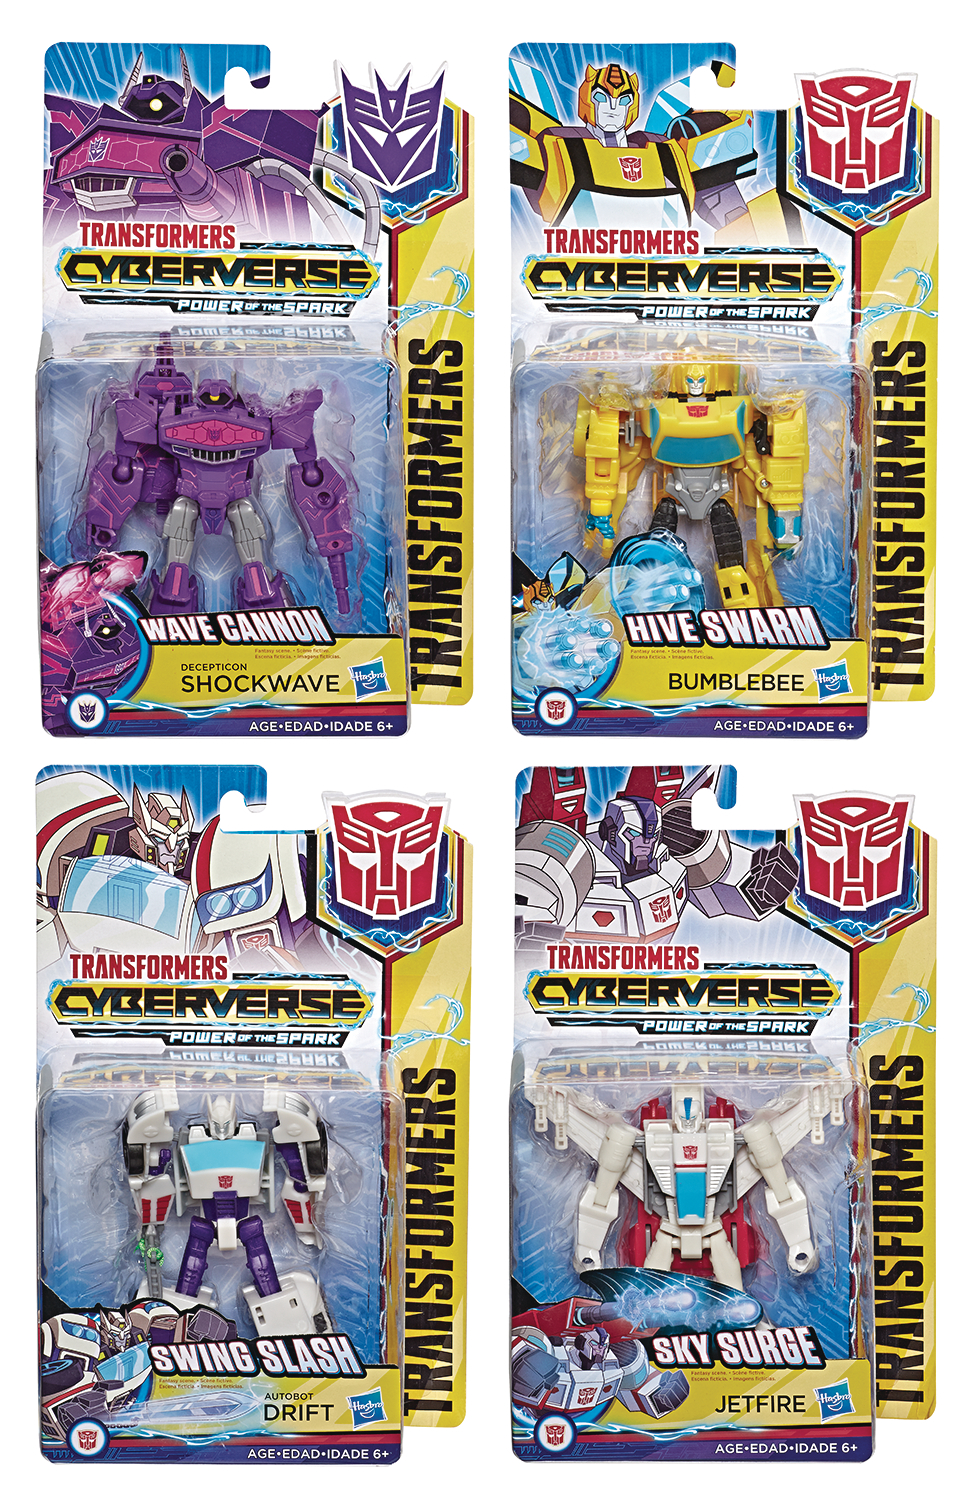 Transformers Cyberverse Warrior Class Wave 5 Assortment with Drift